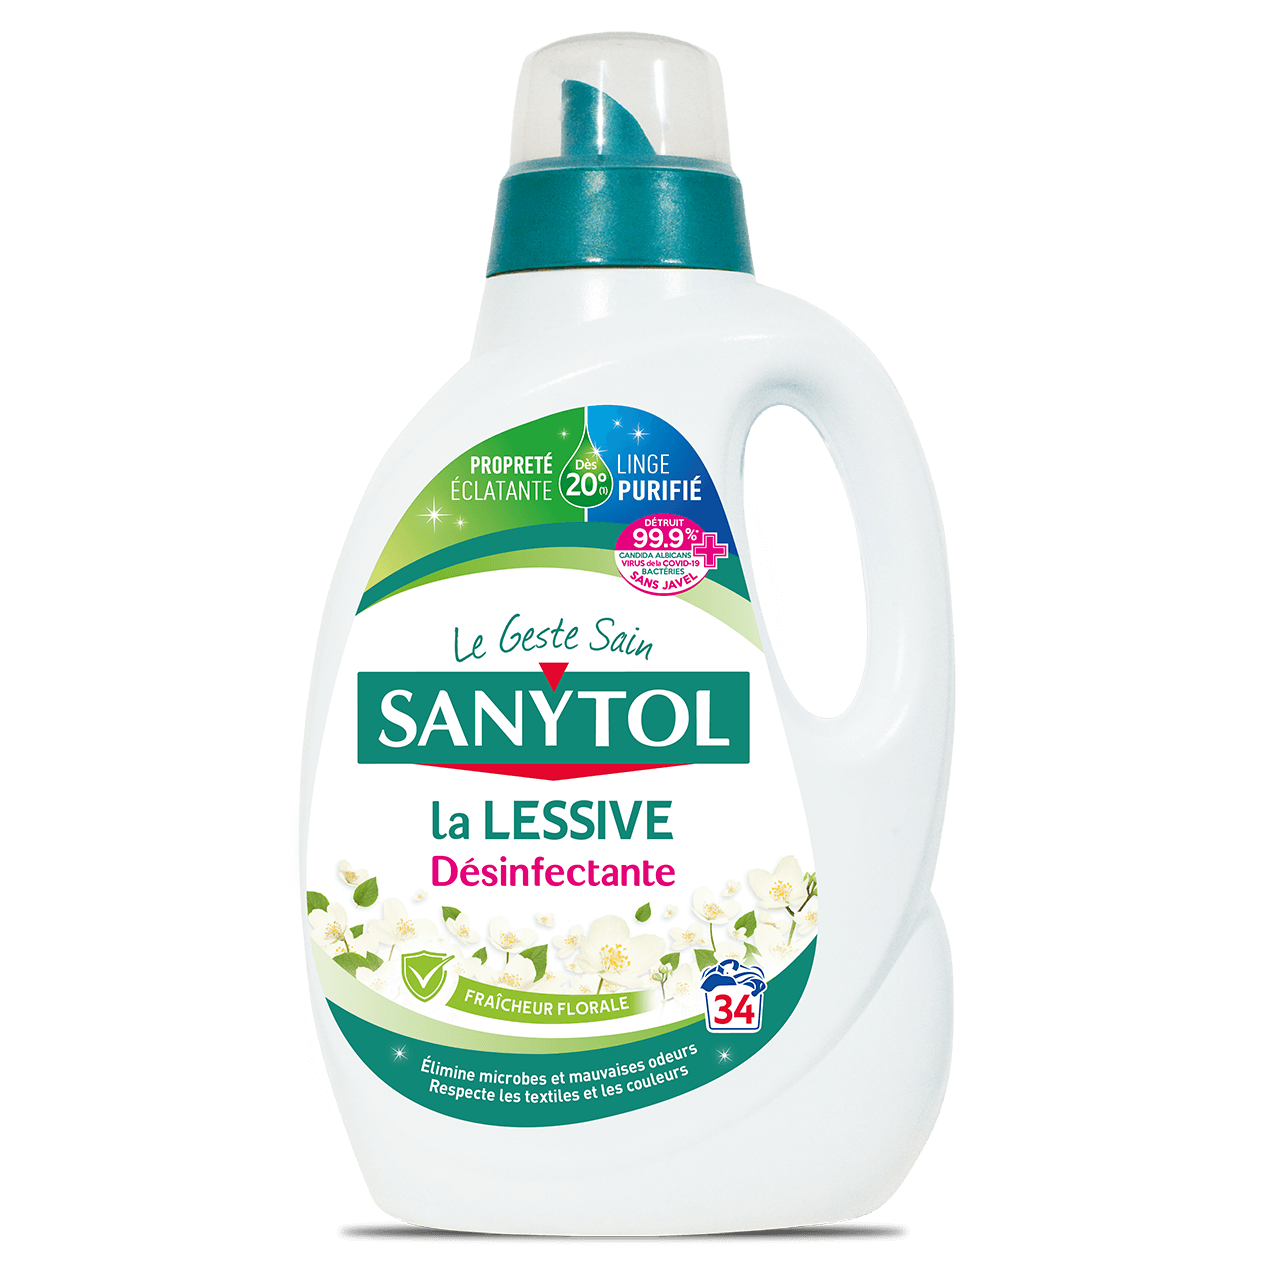 Lingette Desinfectant SANYTOL